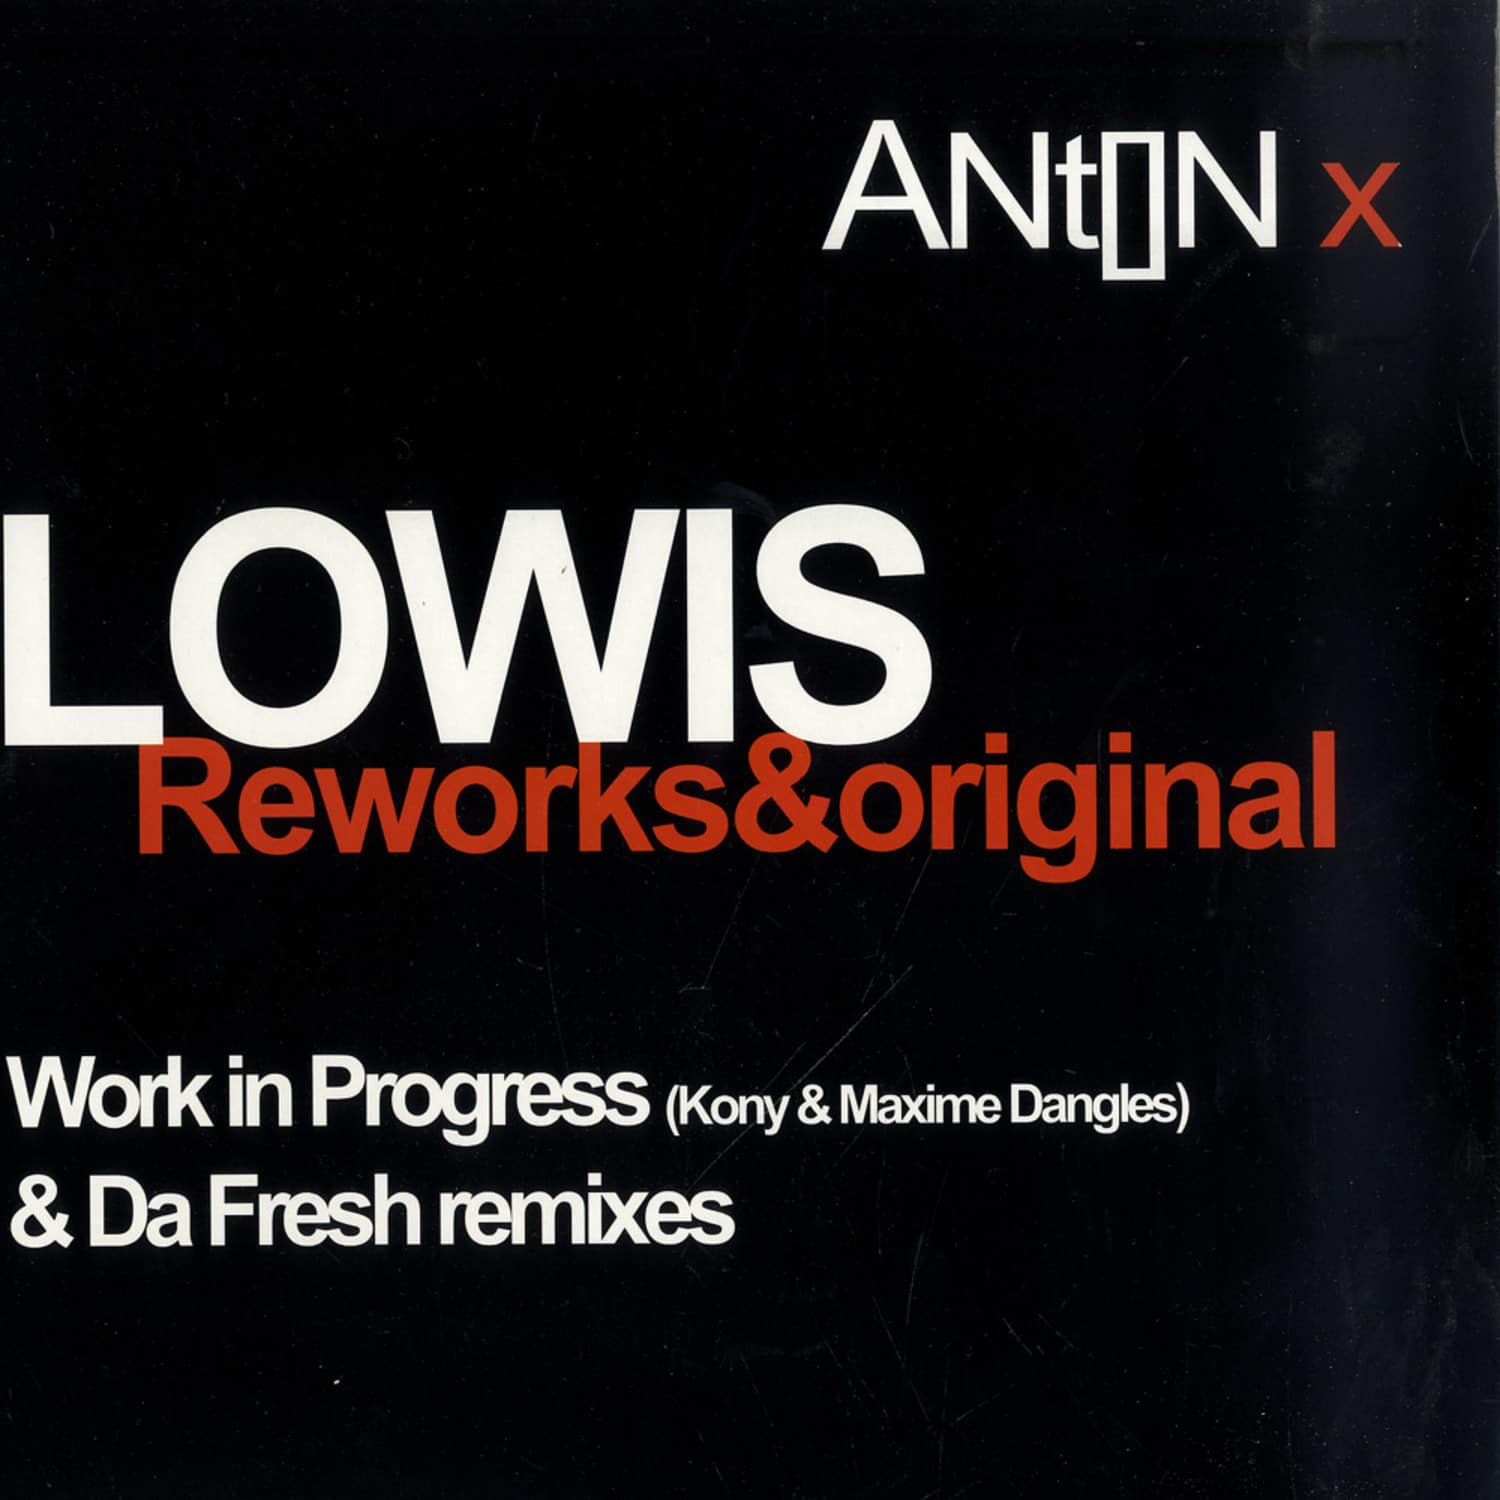 Anton X - LOWIS